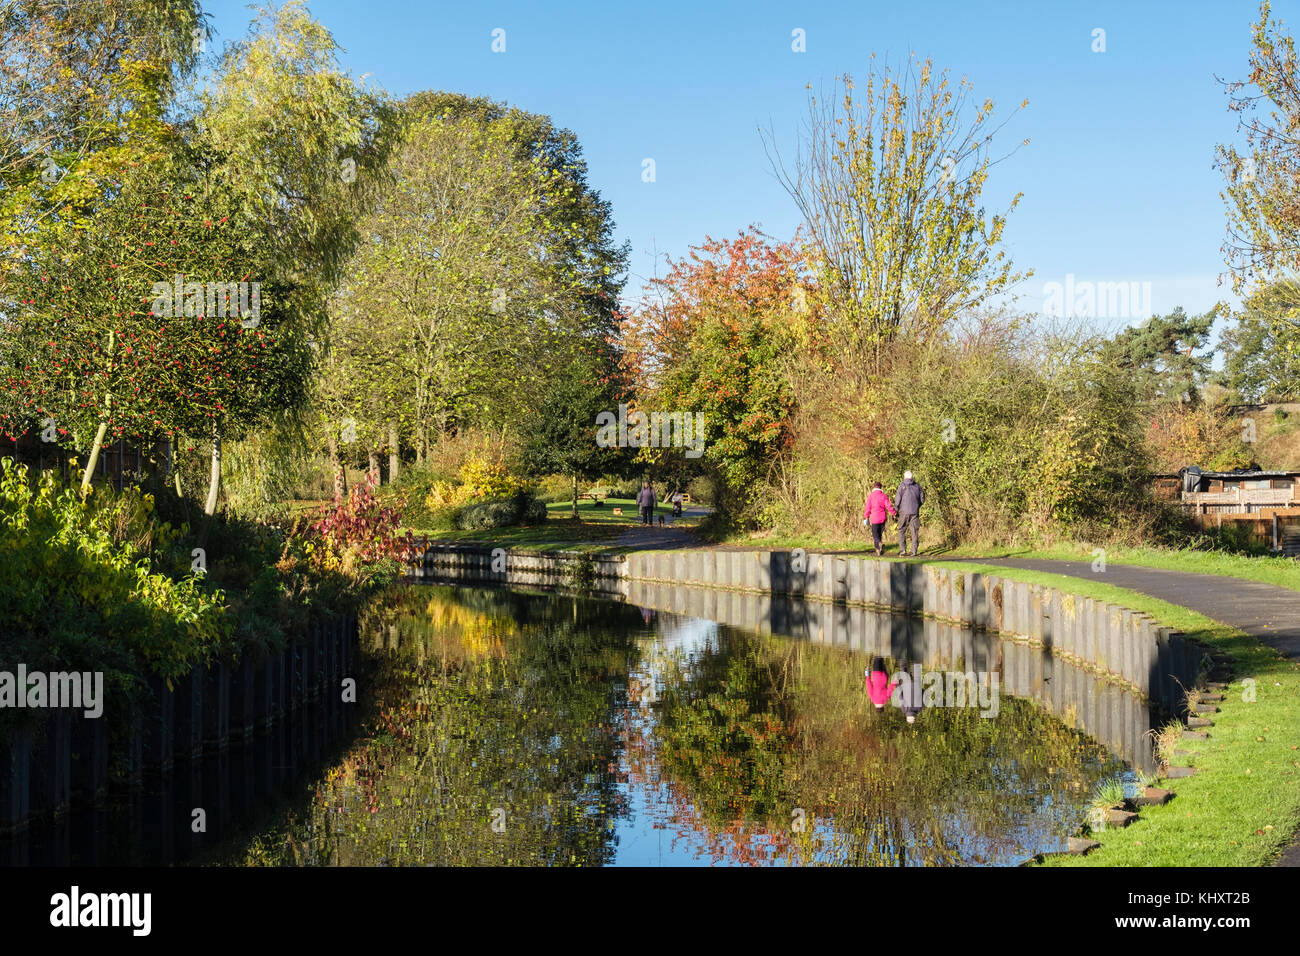 Les gens marcher sur chemin de halage du canal de Droitwich dans les vignes le parc en automne. Droitwich Spa, Worcestershire, Angleterre, Royaume-Uni, Angleterre Banque D'Images